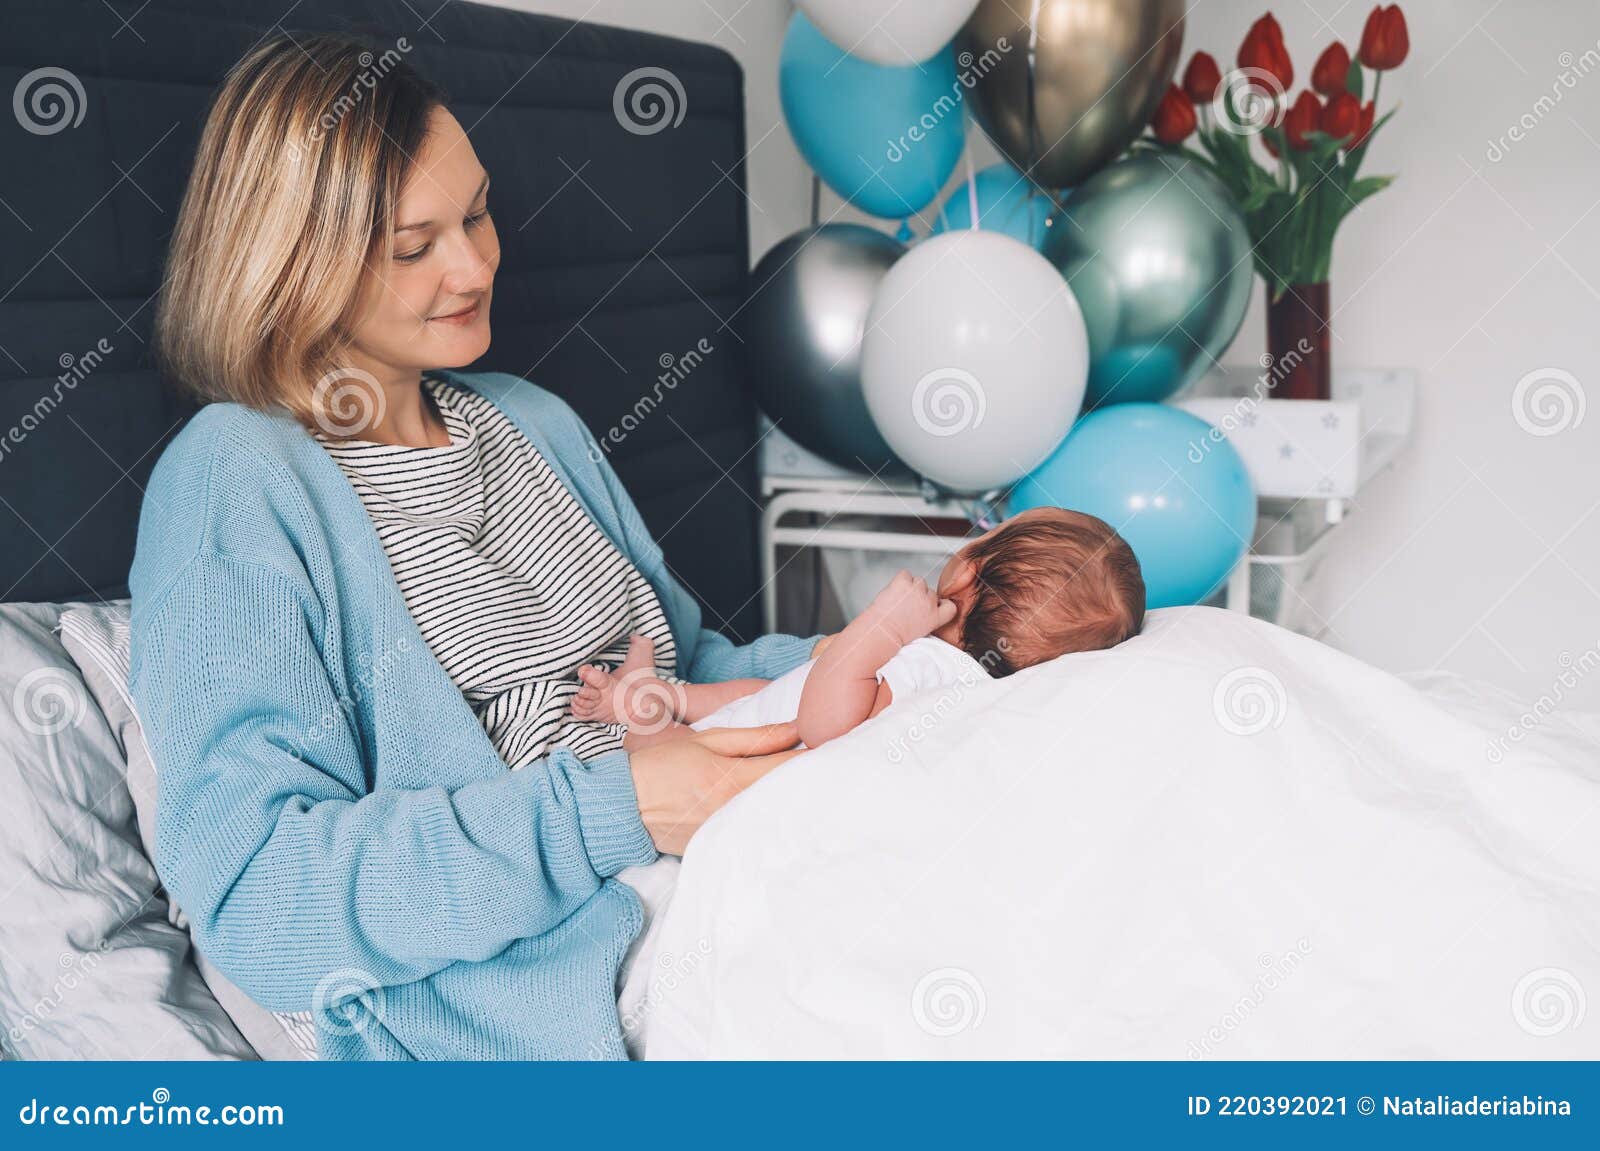 μετά την παράδοση του μωρού, μητέρα και μωρό στο σπίτι. η μητέρα κρατά το  νεογέννητο στα χέρια. μαμά και μωρό μαζί. γέννηση και μη Στοκ Εικόνα -  εικόνα από lifestyle, babylonia: 220392021